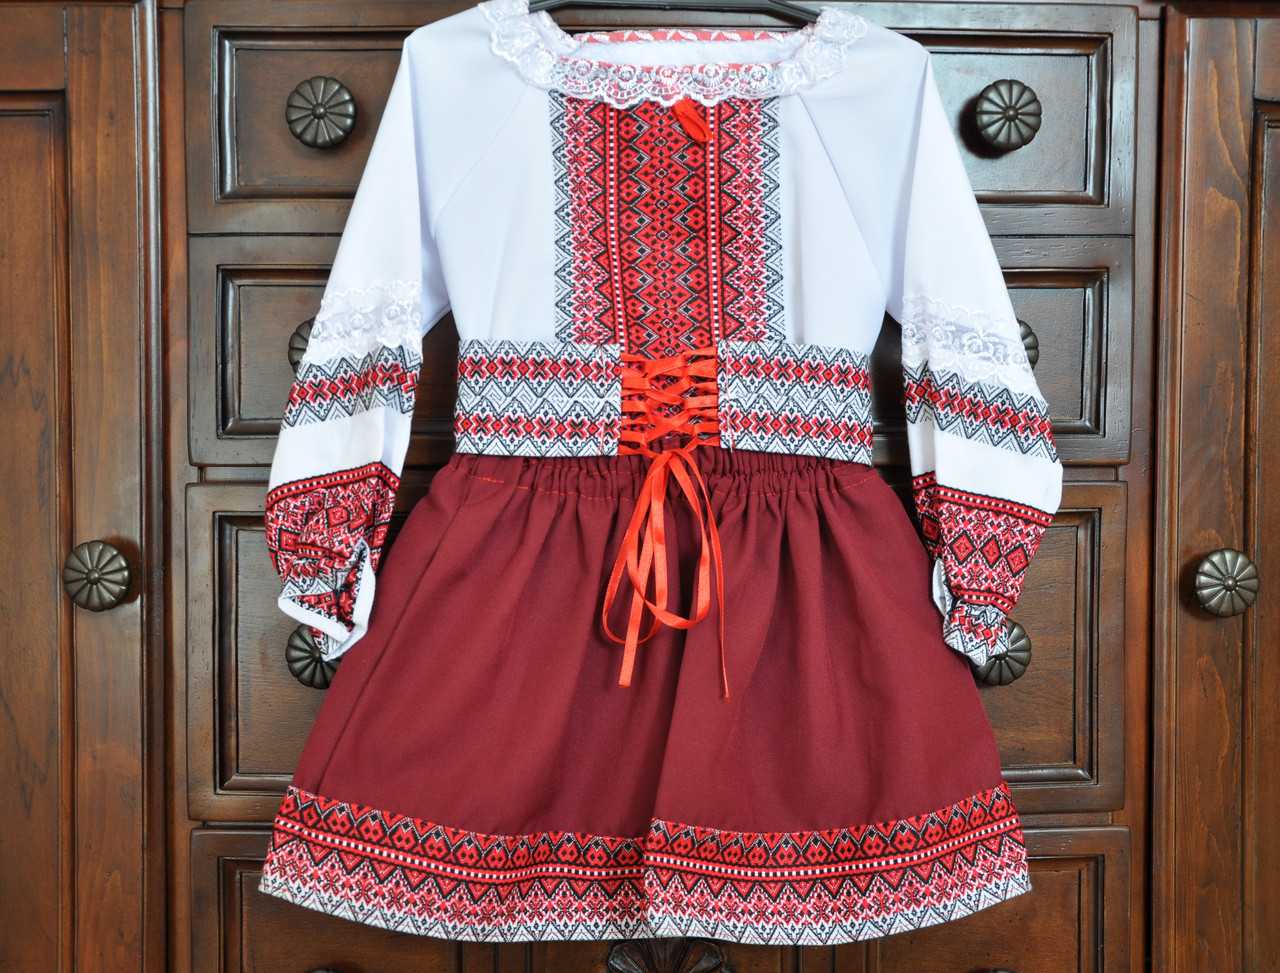 Український народний костюм для дівчинки "Двоєчка" (4-5 років)